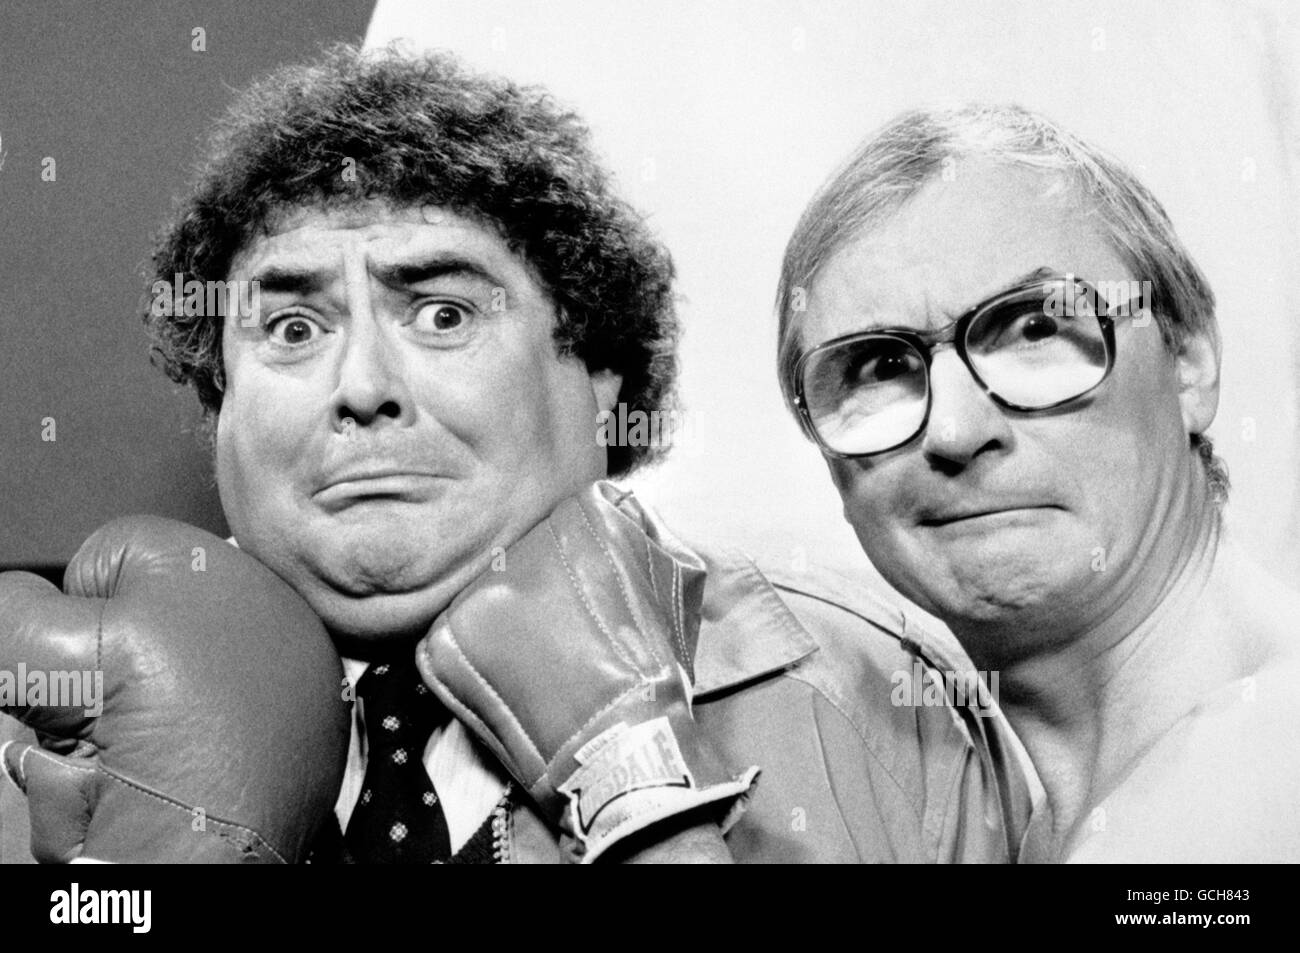 Pequeño y grande. Archivo de archivo, fechado 03-03-1986, de comedia doble acto poco y grande. Foto de stock